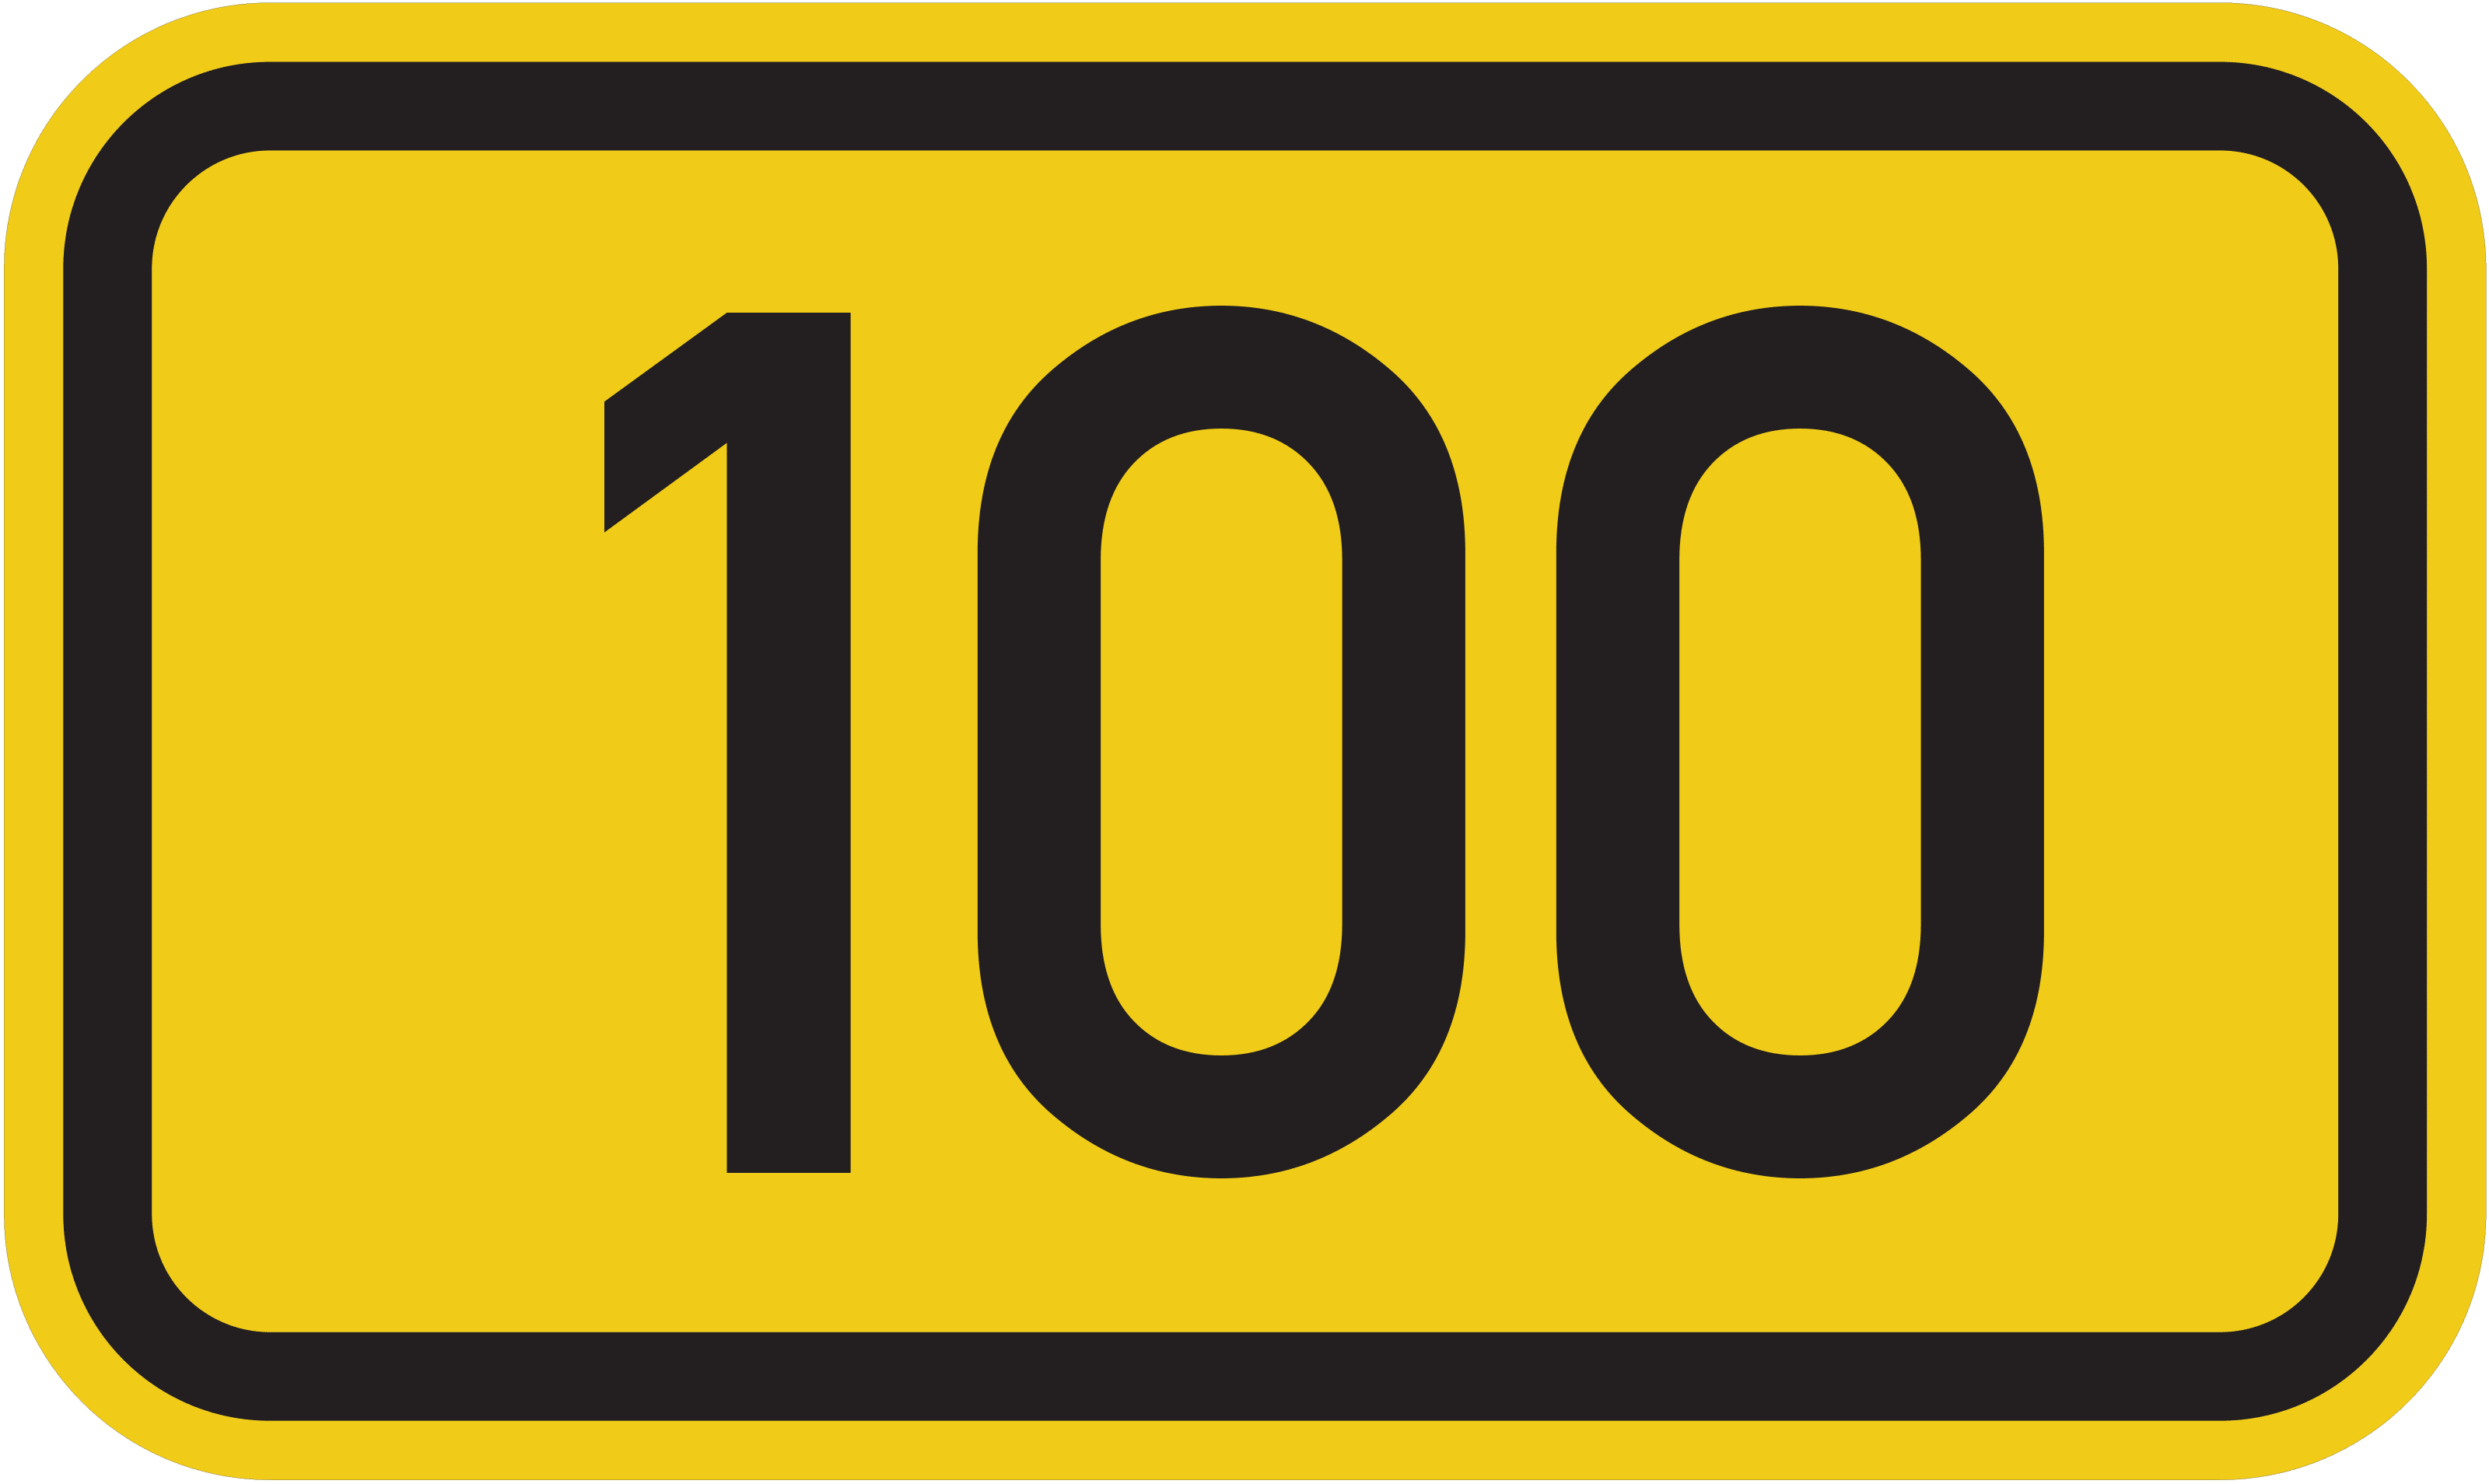 Bundesstraße B 100